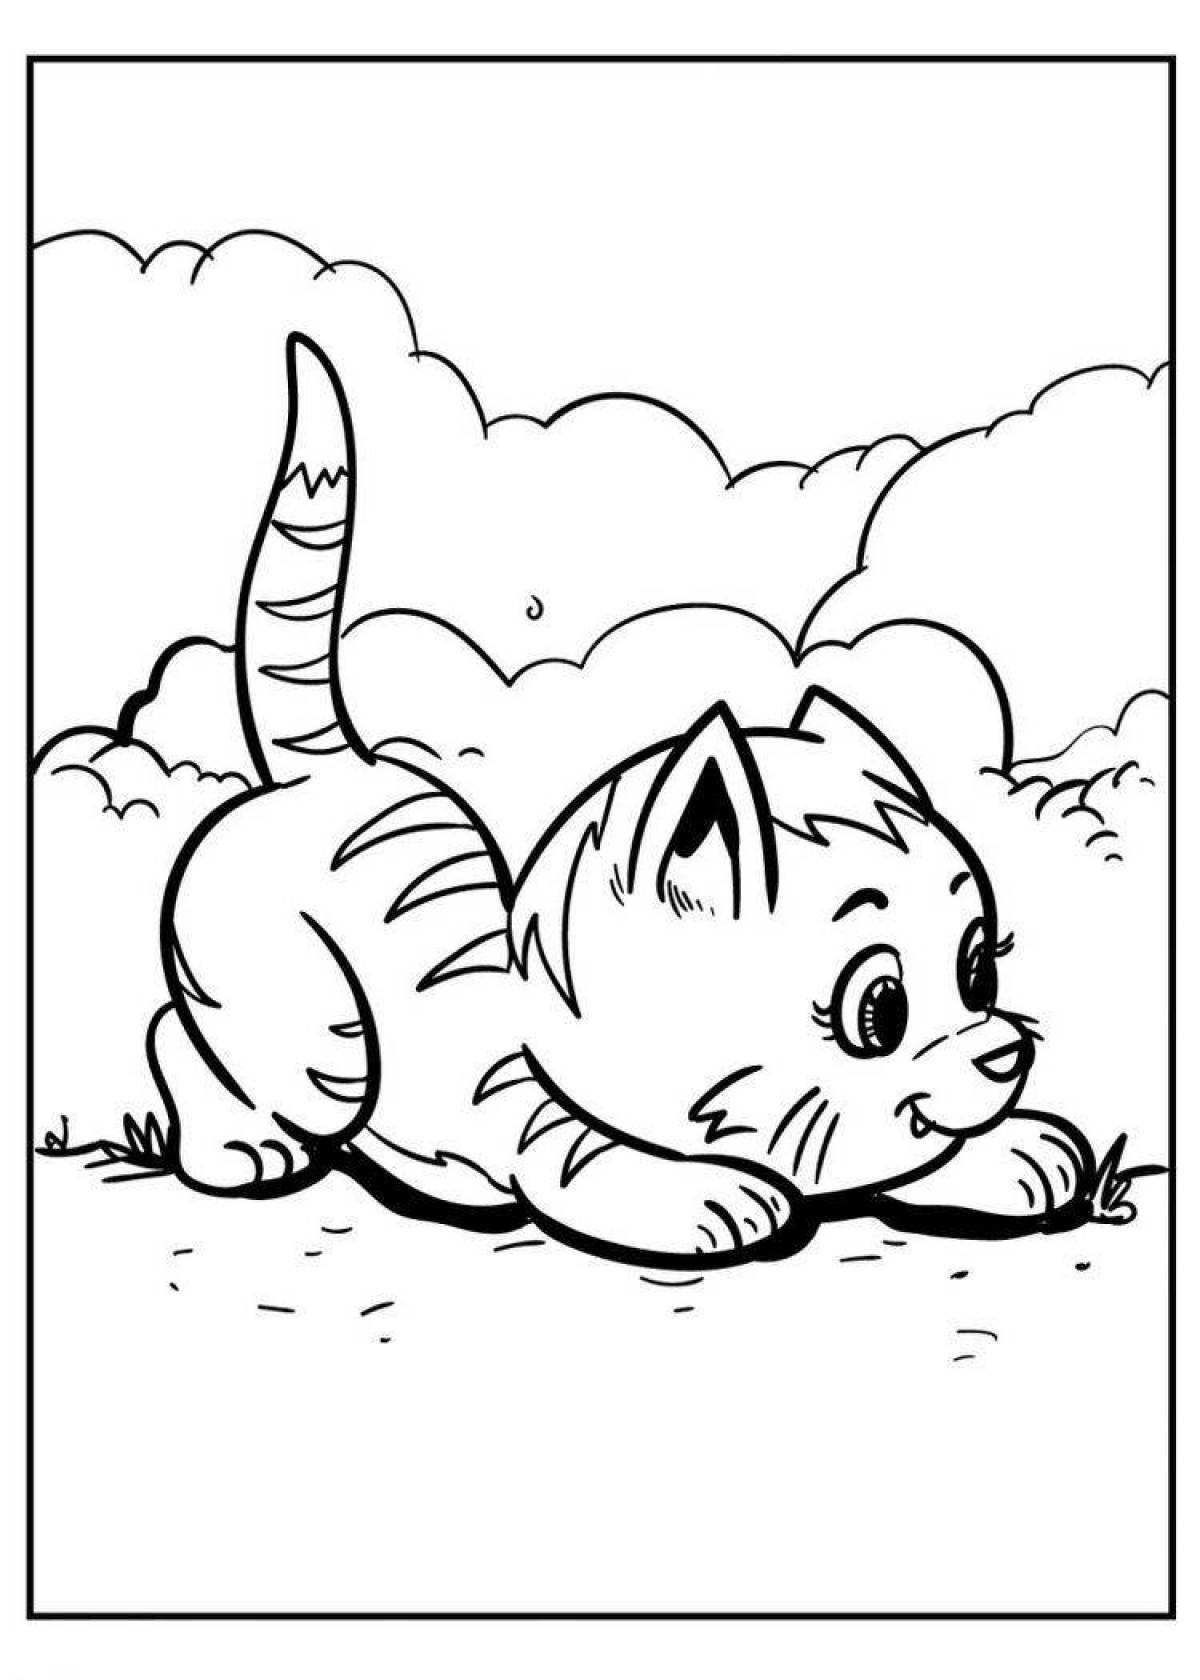 Whiskas cat humorous coloring book